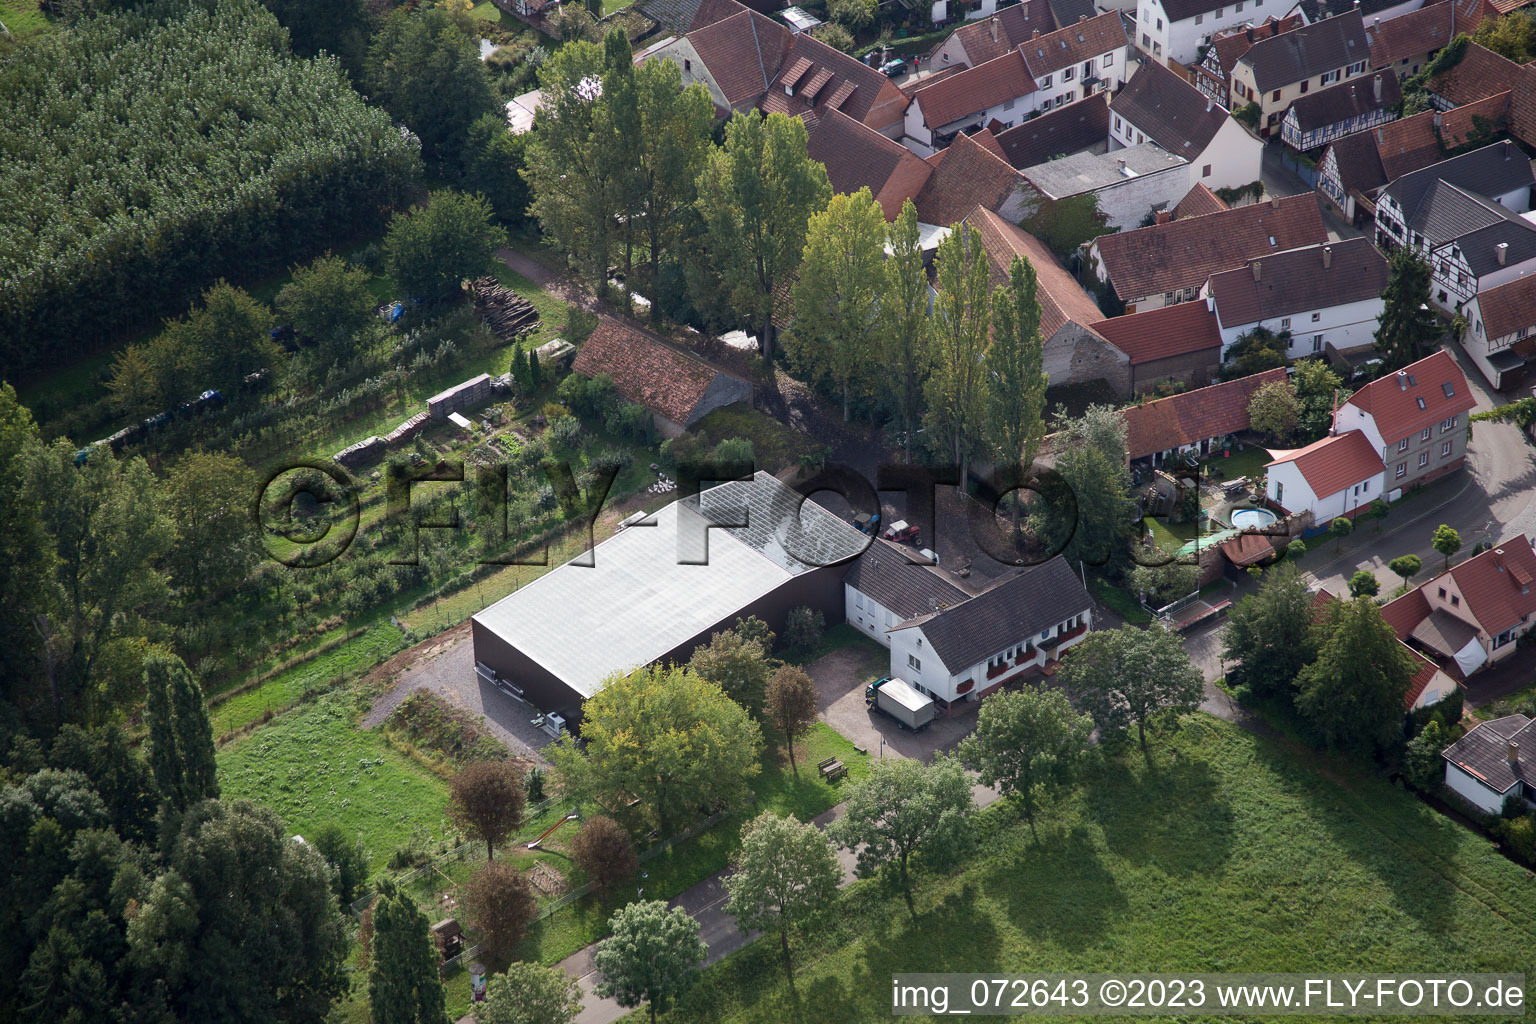 Aerial view of Bahnhofstr in the district Klingen in Heuchelheim-Klingen in the state Rhineland-Palatinate, Germany